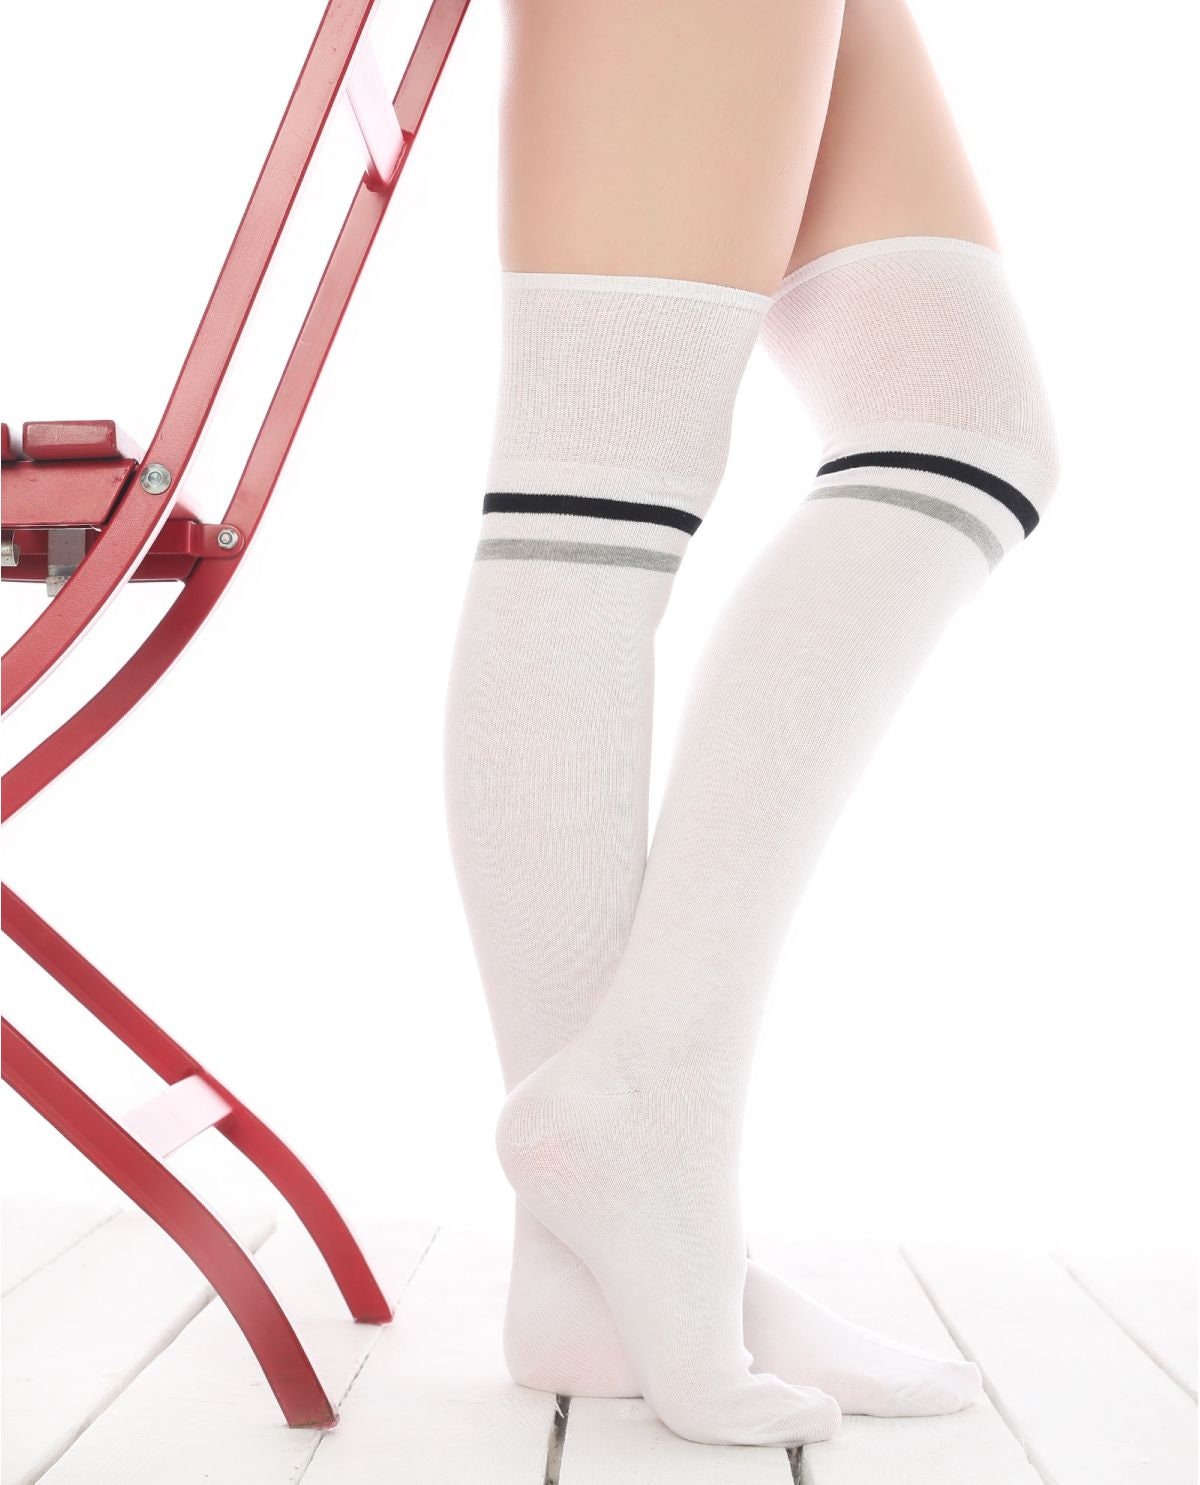 Women's Long Over the Knee Socks, Gift Idea for Her, White Stripe Thigh High, Skating Socks, Knee High Sock, Stocking Gift, Cotton Knee Sock